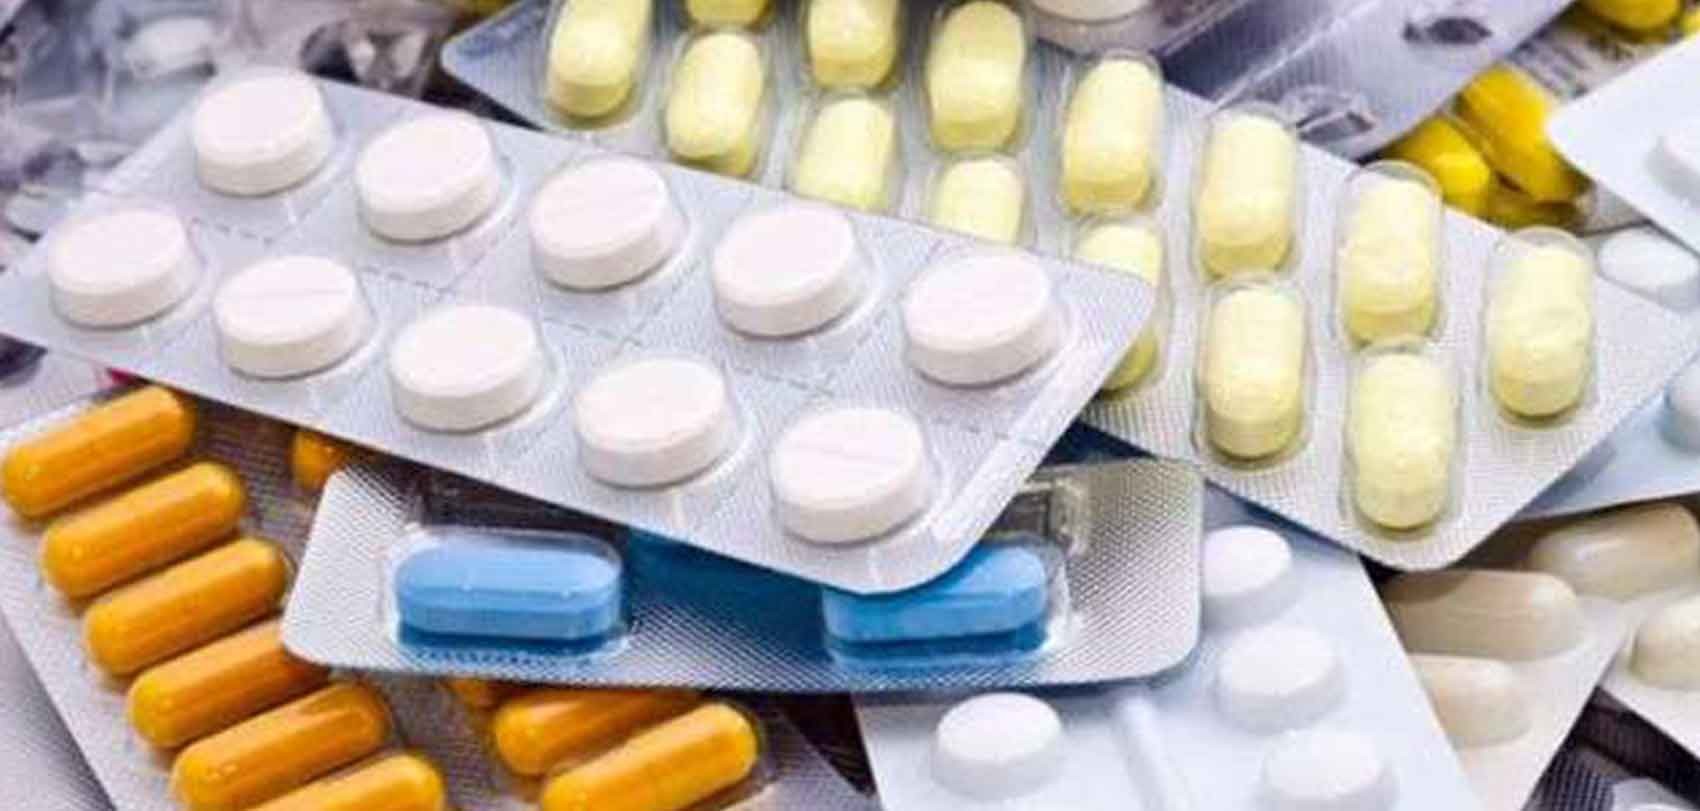 श्रीलङ्कामा औषधिको मूल्य आकासियो, झन् बढ्दै अभाव